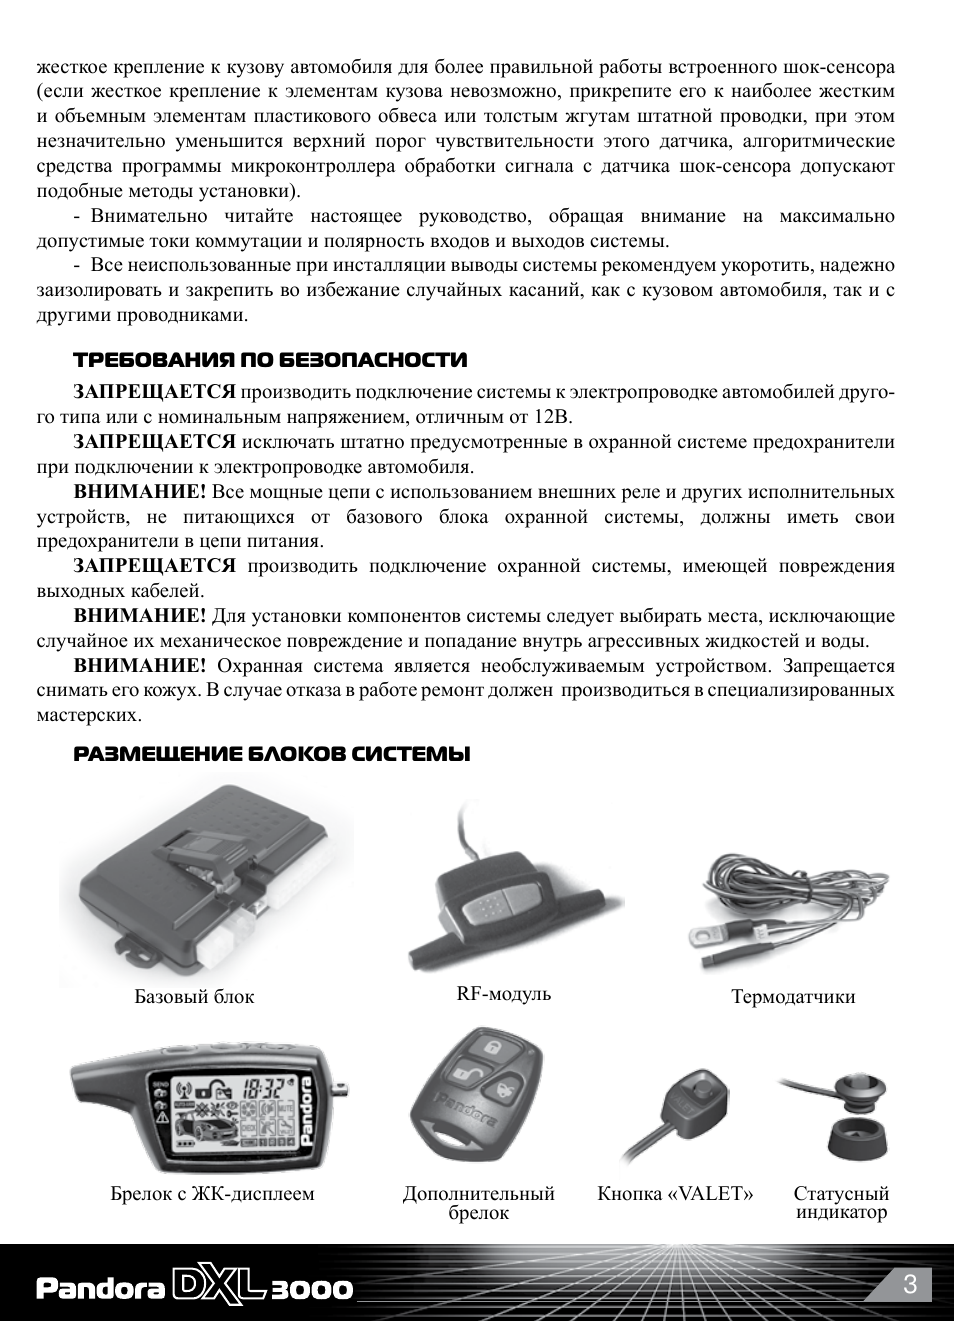 Автосигнализация pandora dxl 3910: характеристики, инструкция, установка, отзывы :: syl.ru